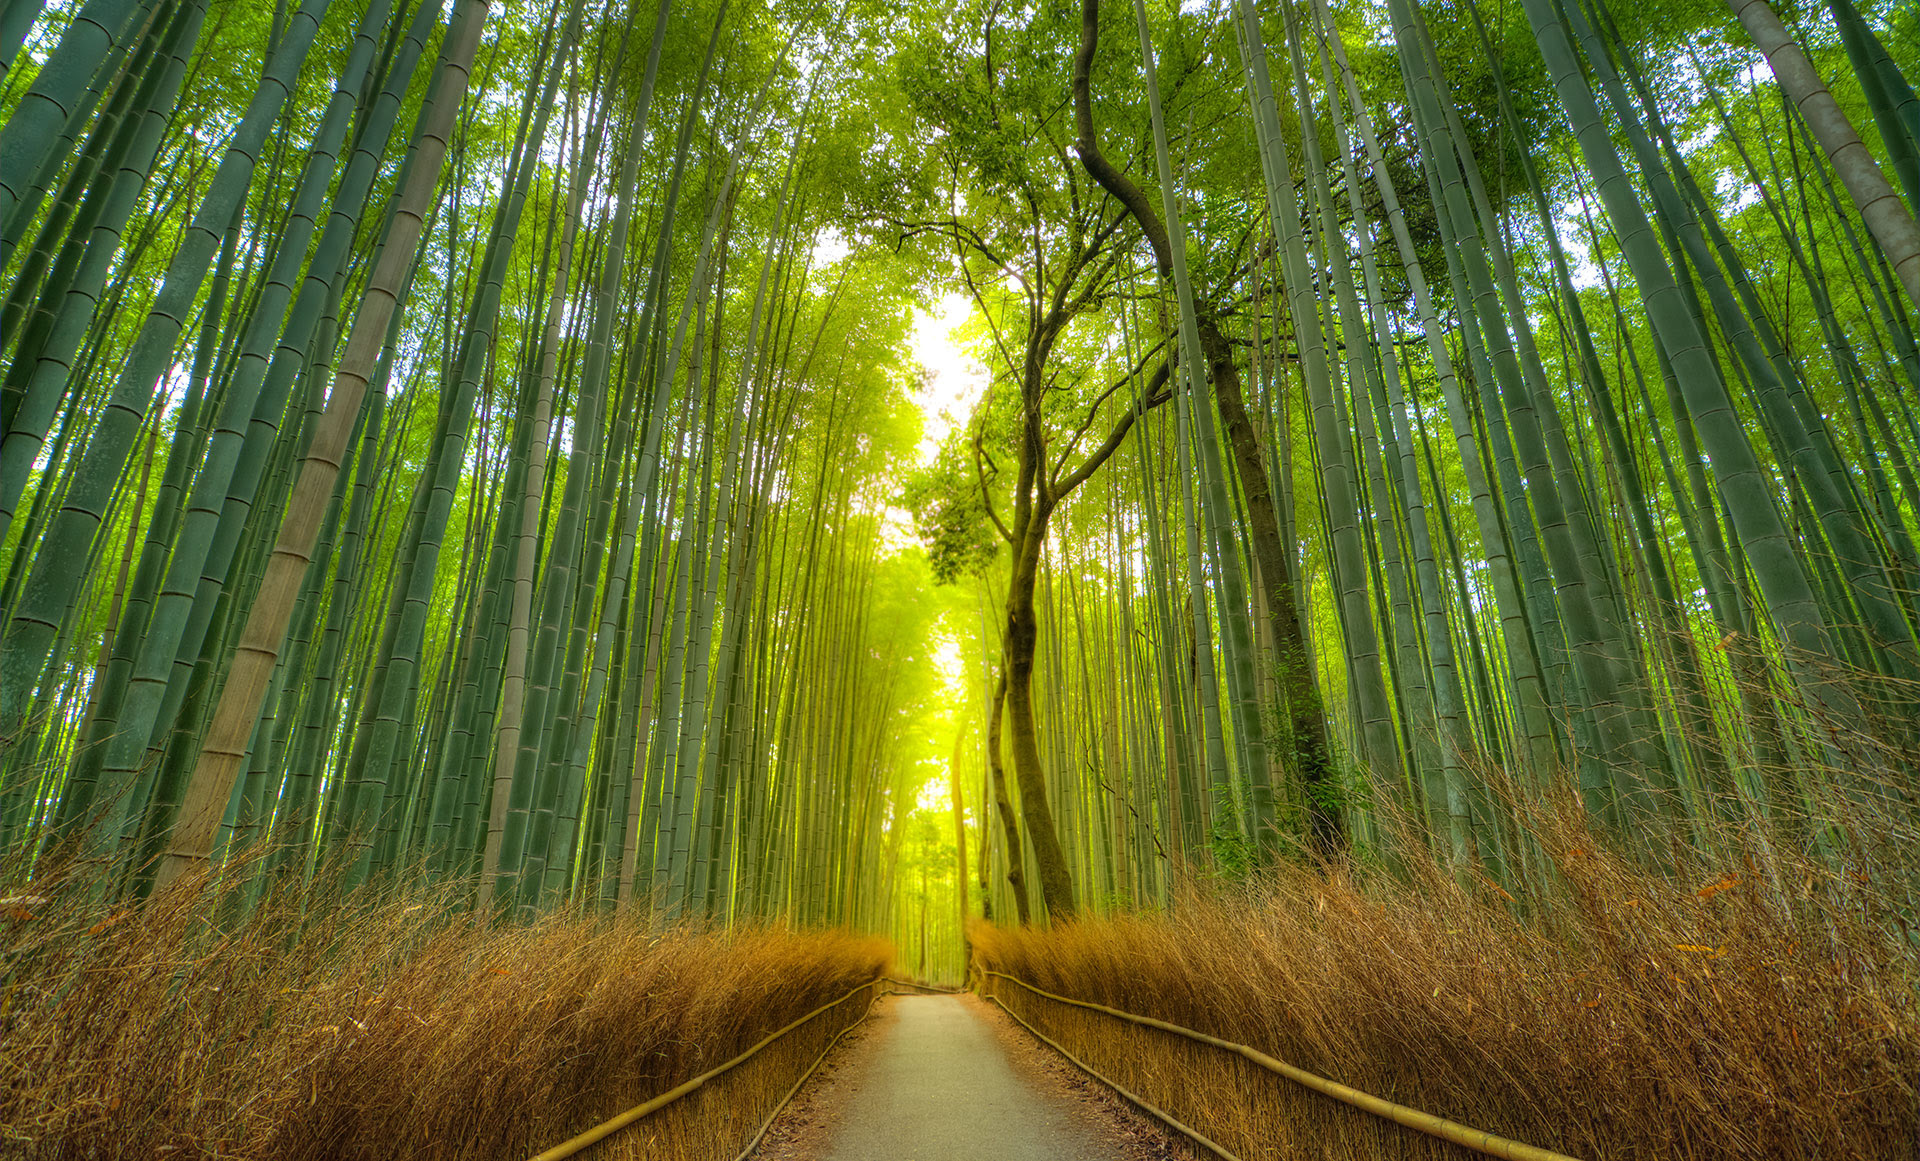 El bosque de bambú de Arashiyama se destaca por las sombras de clorofila y el susurro que produce el balanceo suave de los troncos de bambú (Getty Images)